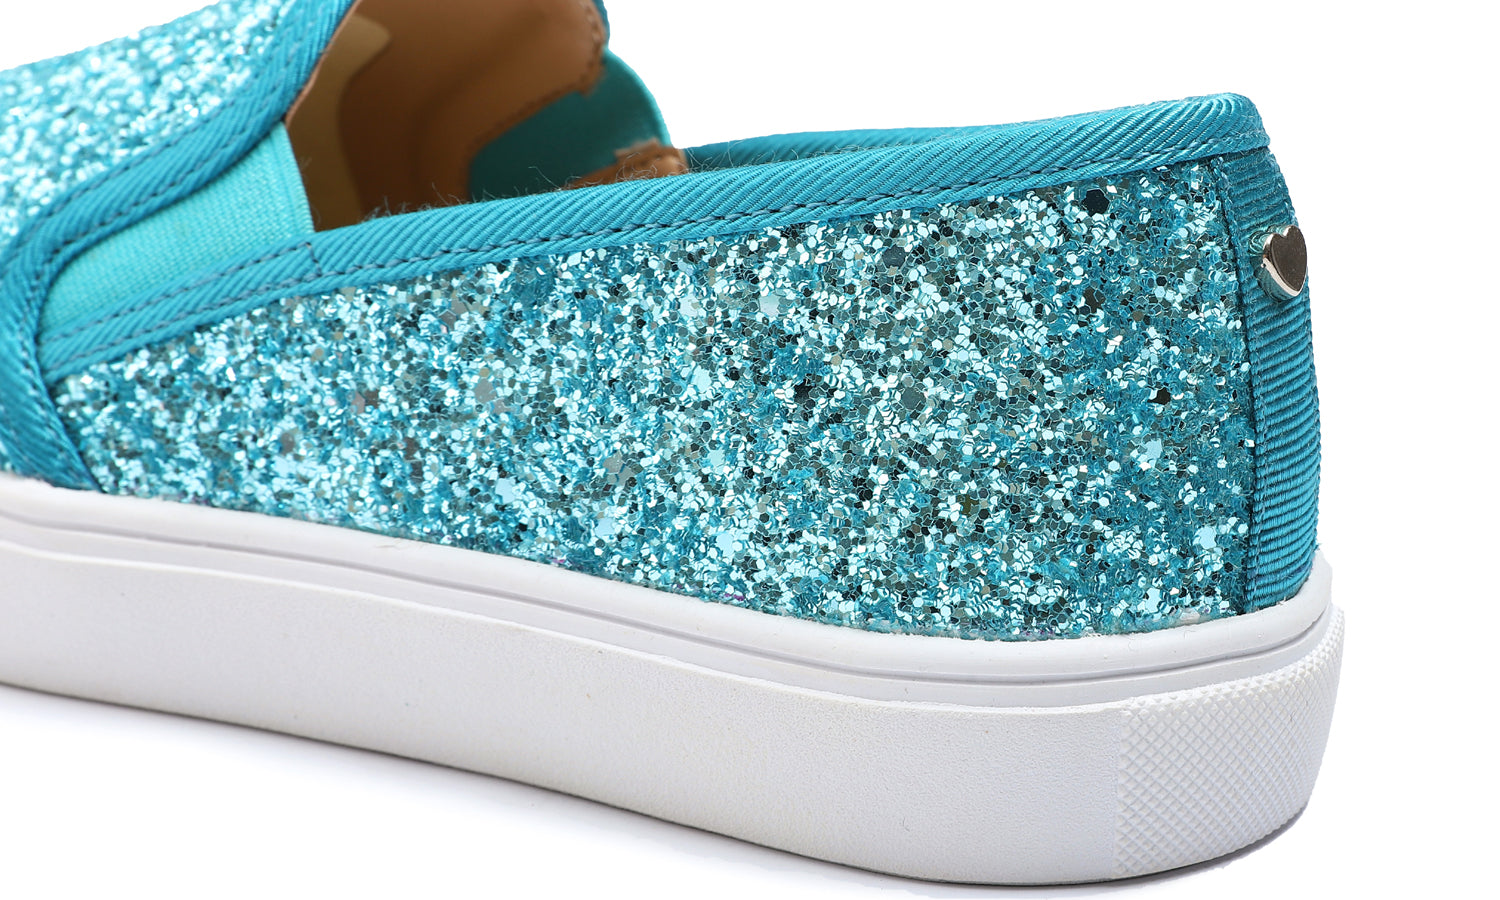 Feversole Women's Glitter Turquoise Slip On Sneaker Casual Flat Loafers